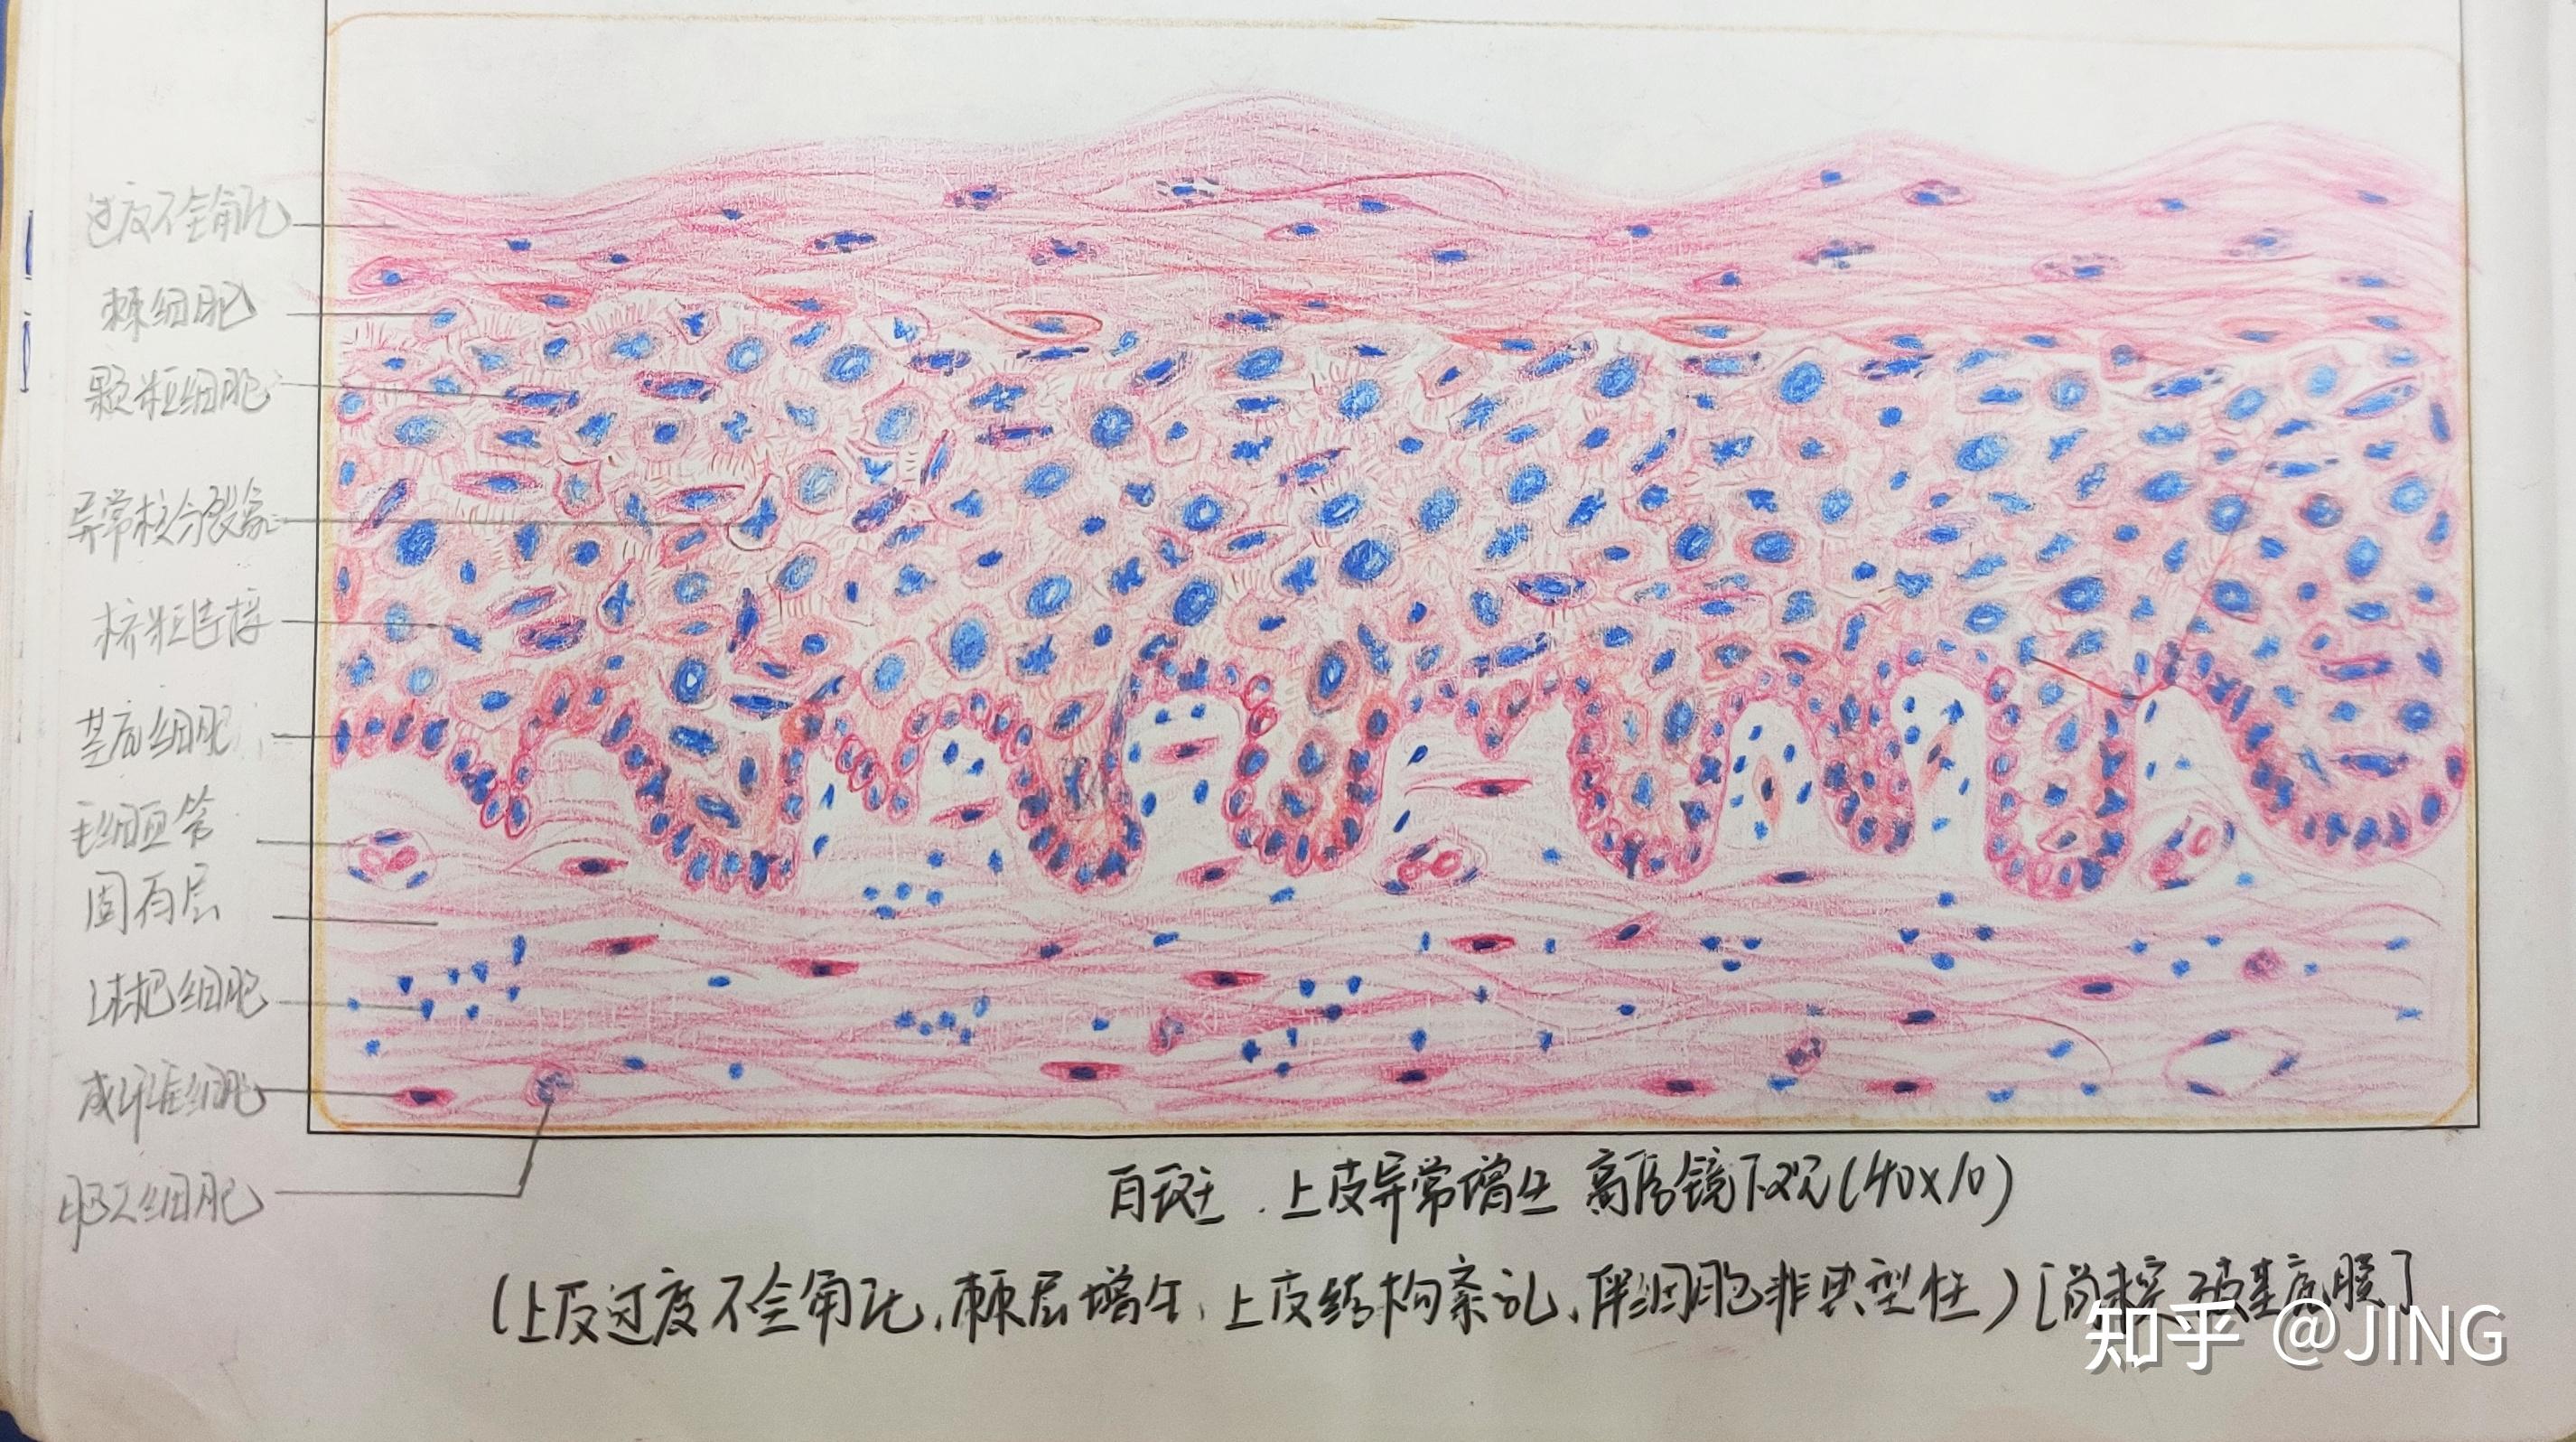 人口腔上皮细胞手绘图图片